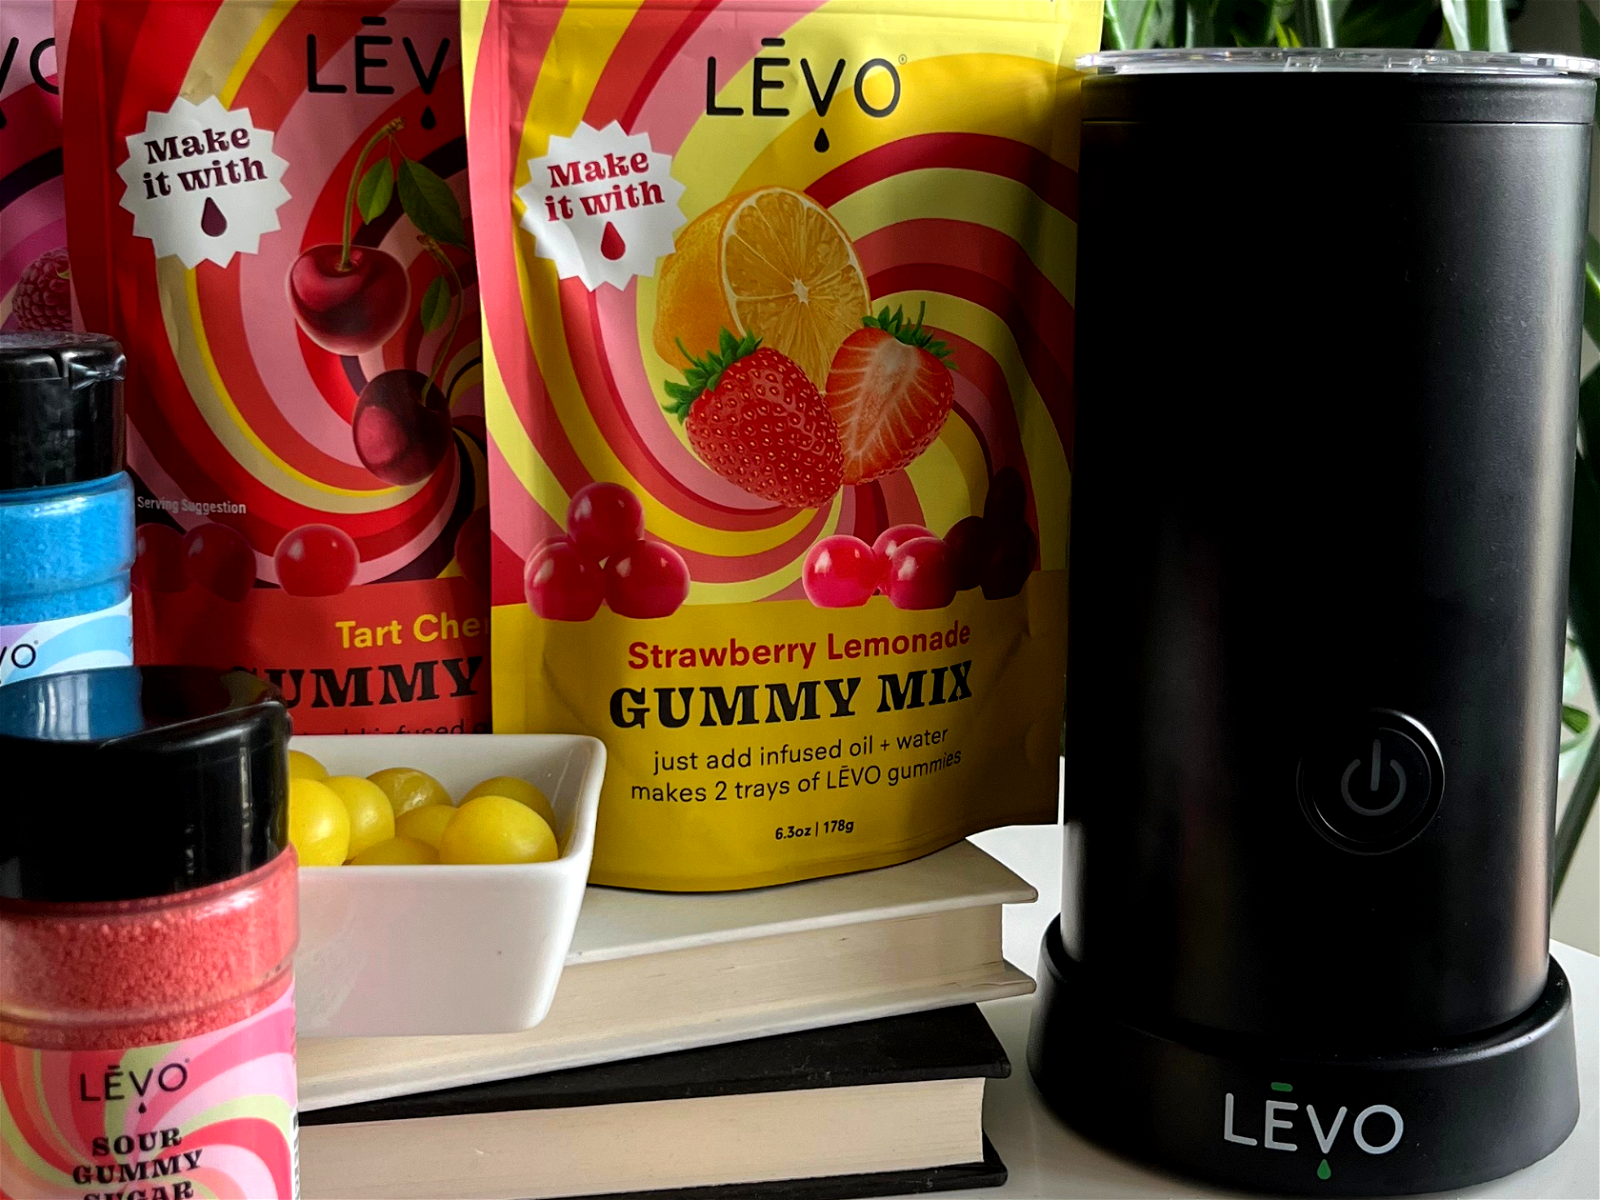 Gummy Glitter - LEVO Oil Infusion, Inc.